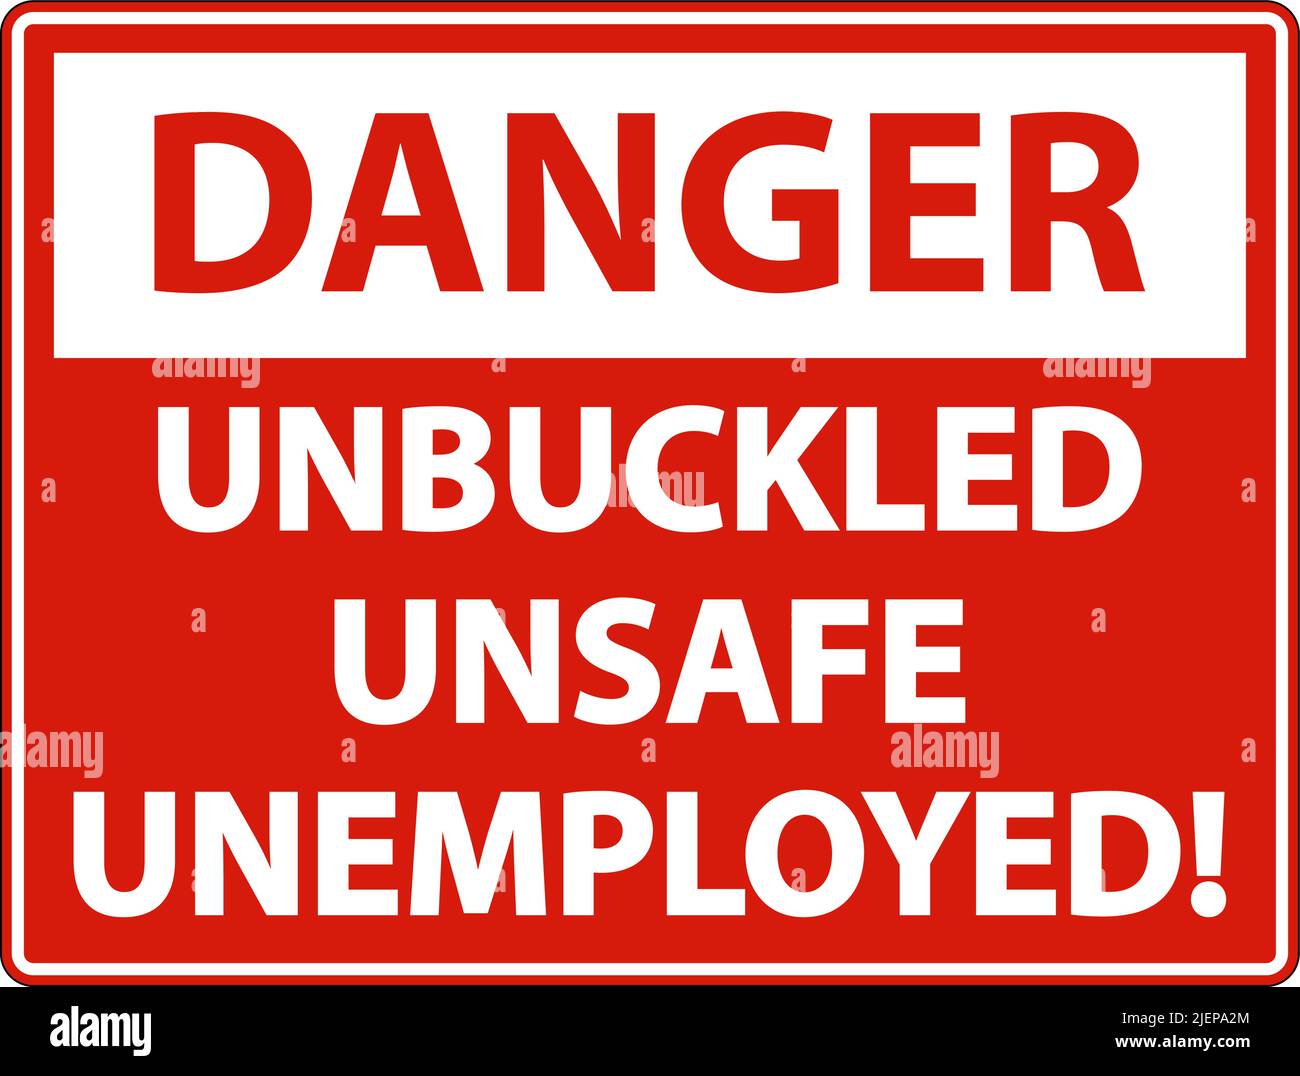 Danger non bouclé sans emploi dangereux affiche sur fond blanc Illustration de Vecteur